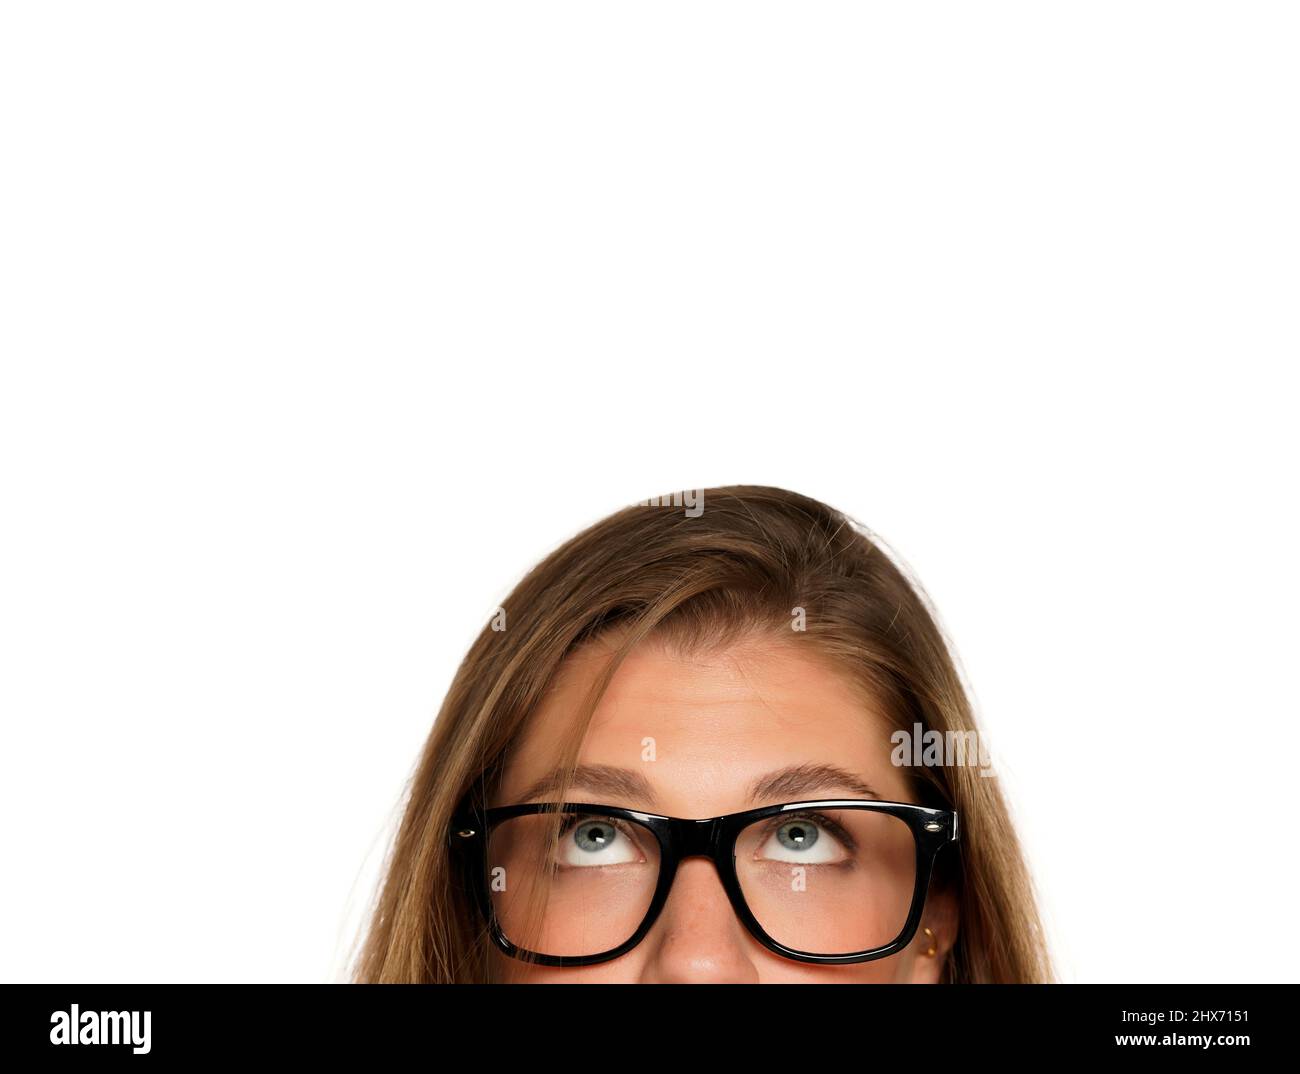 Mezzo ritratto di una giovane donna perplessa con occhiali su sfondo bianco Foto Stock